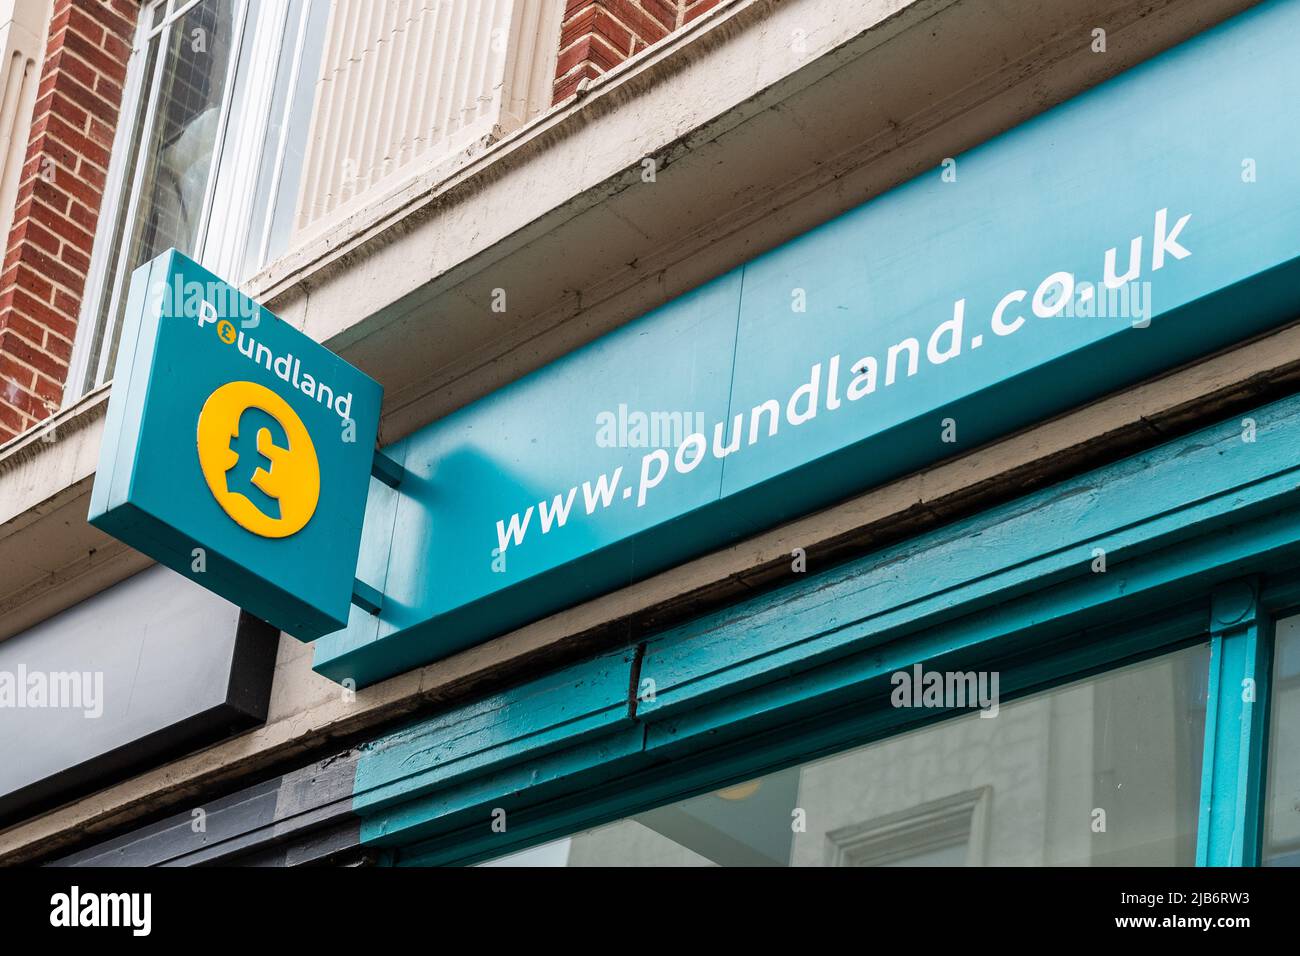 Tienda de descuento Poundland signo / tienda frente en el Reino Unido. Foto de stock